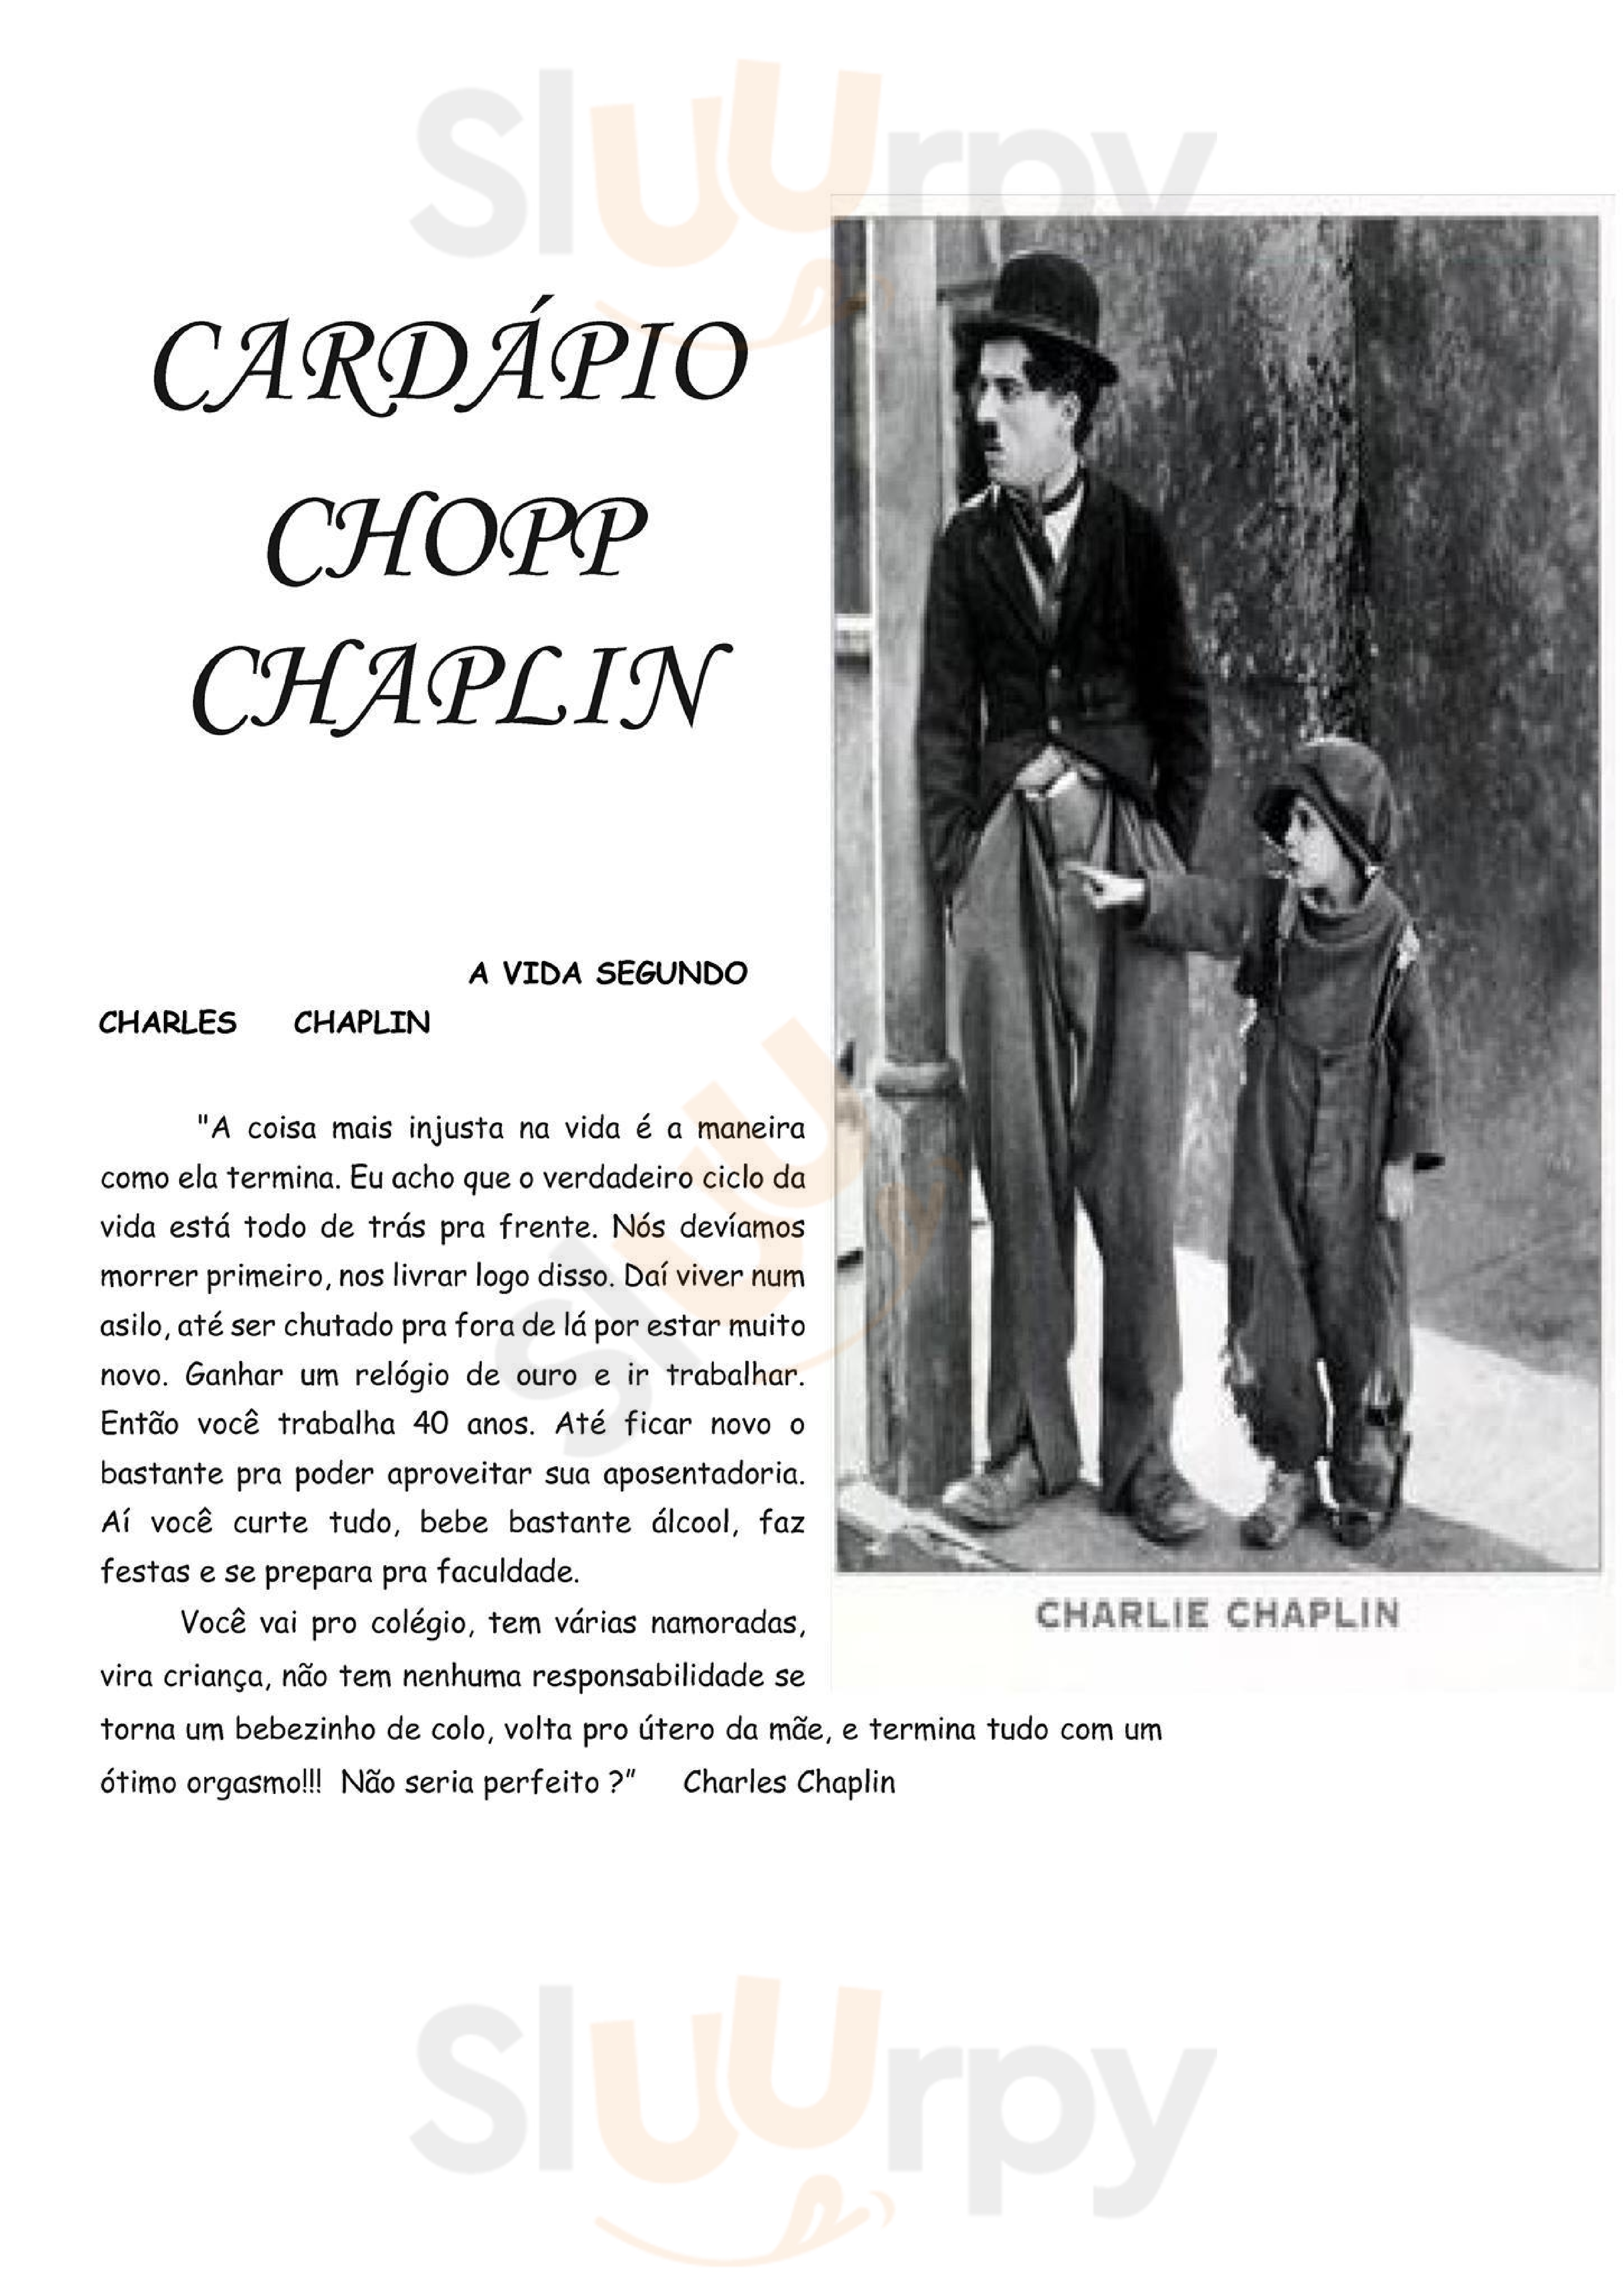 Chopp Chaplin São Miguel do Oeste Menu - 1